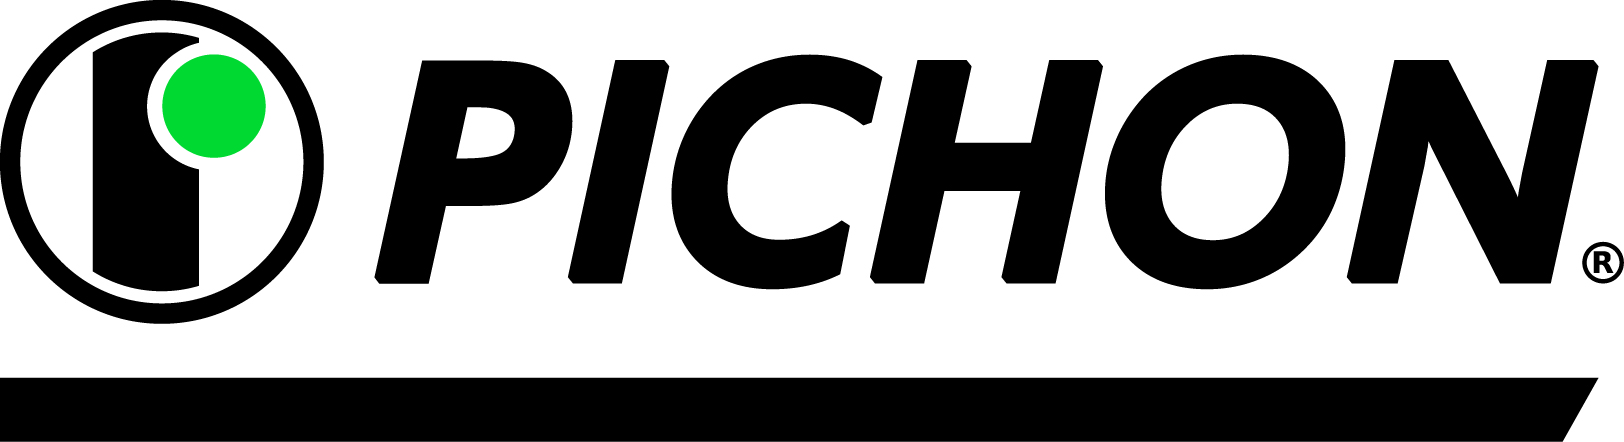 pichon-logo-jpg